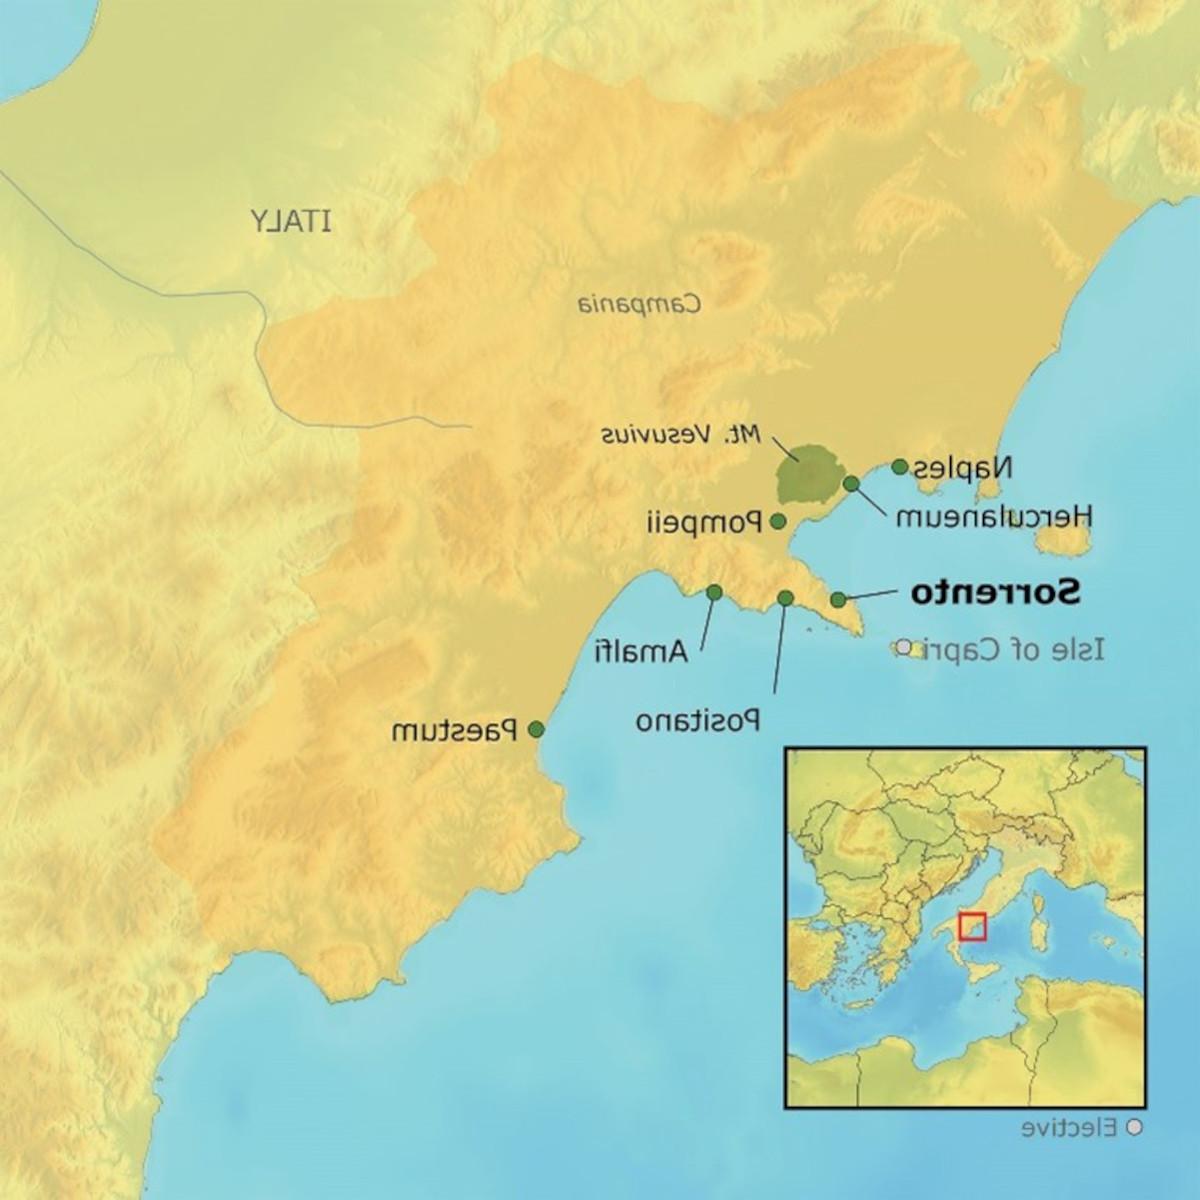 Map of Amalfi tour destinations